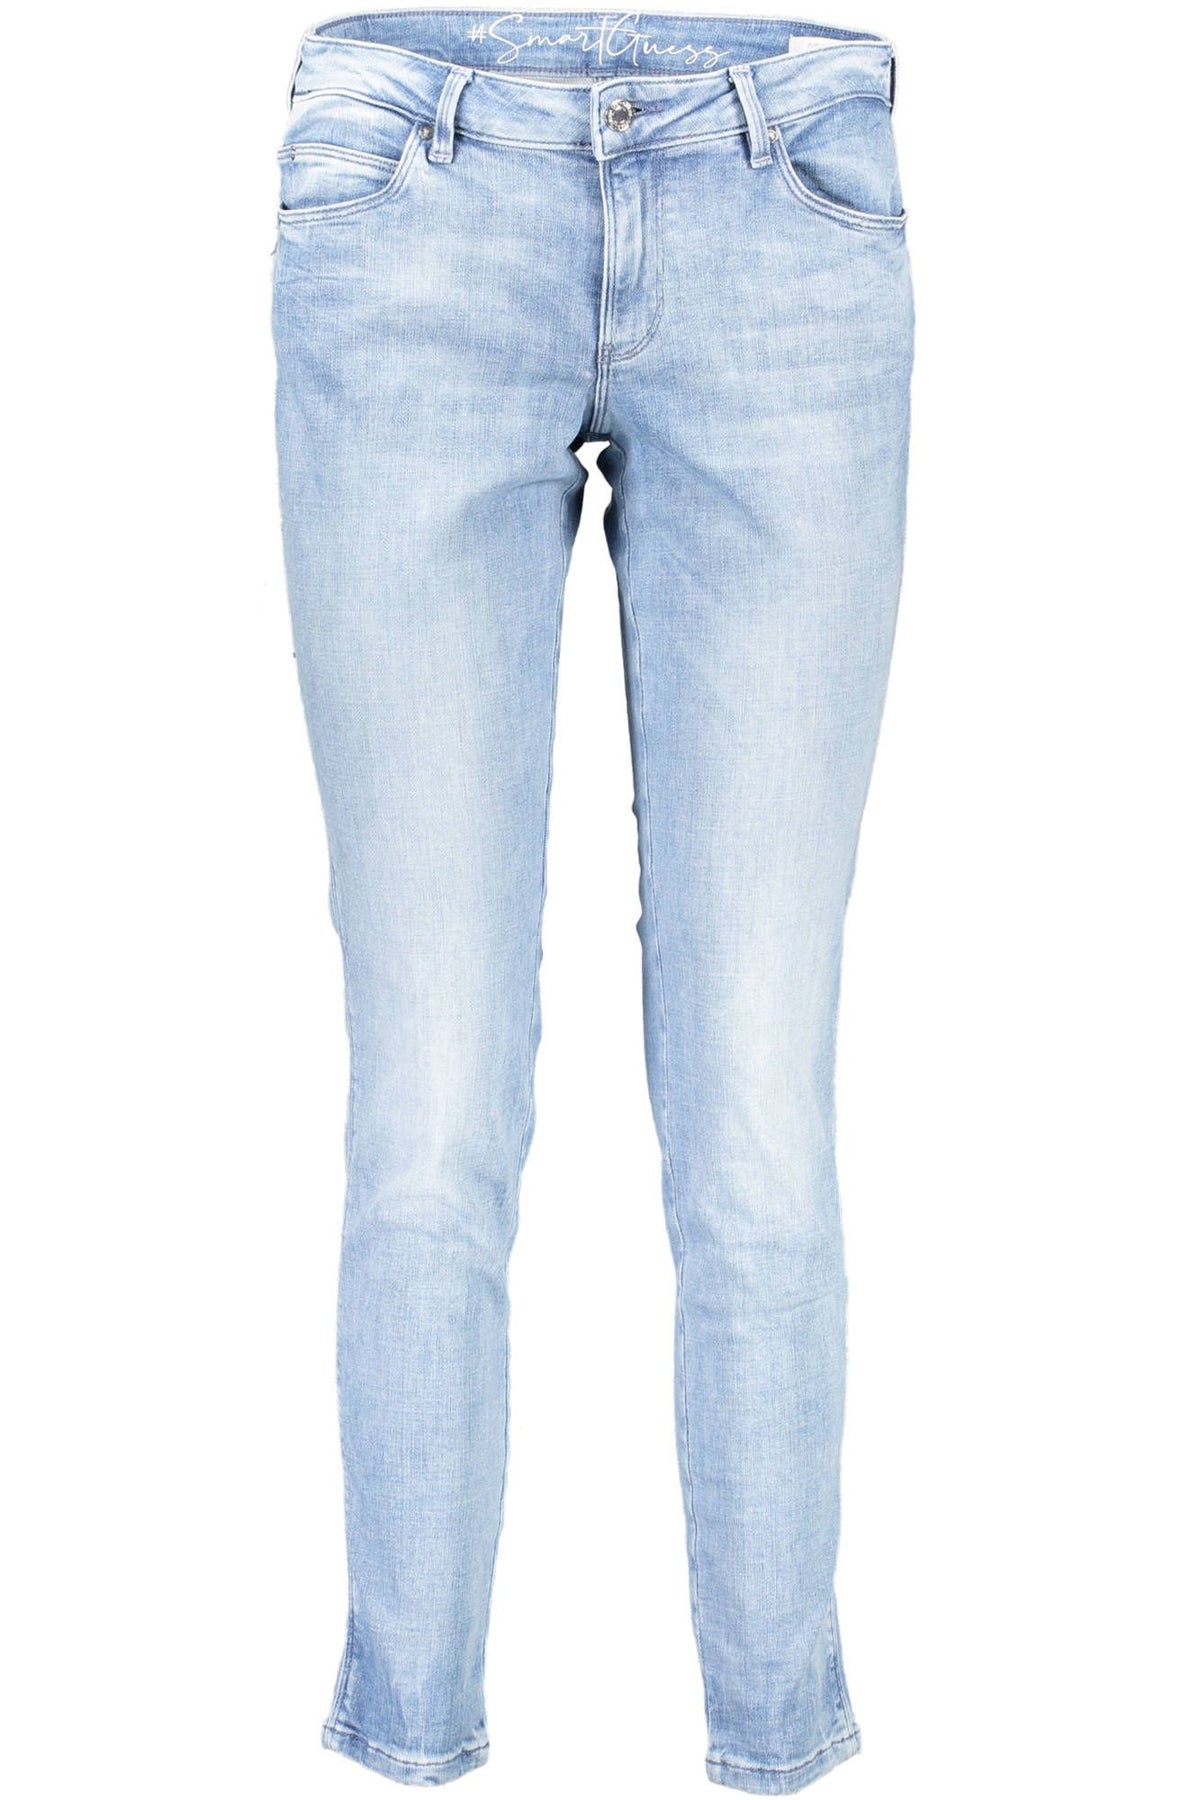 Guess Jeans – Schicke Skinny-Jeans in Hellblau mit mittelhohem Bund